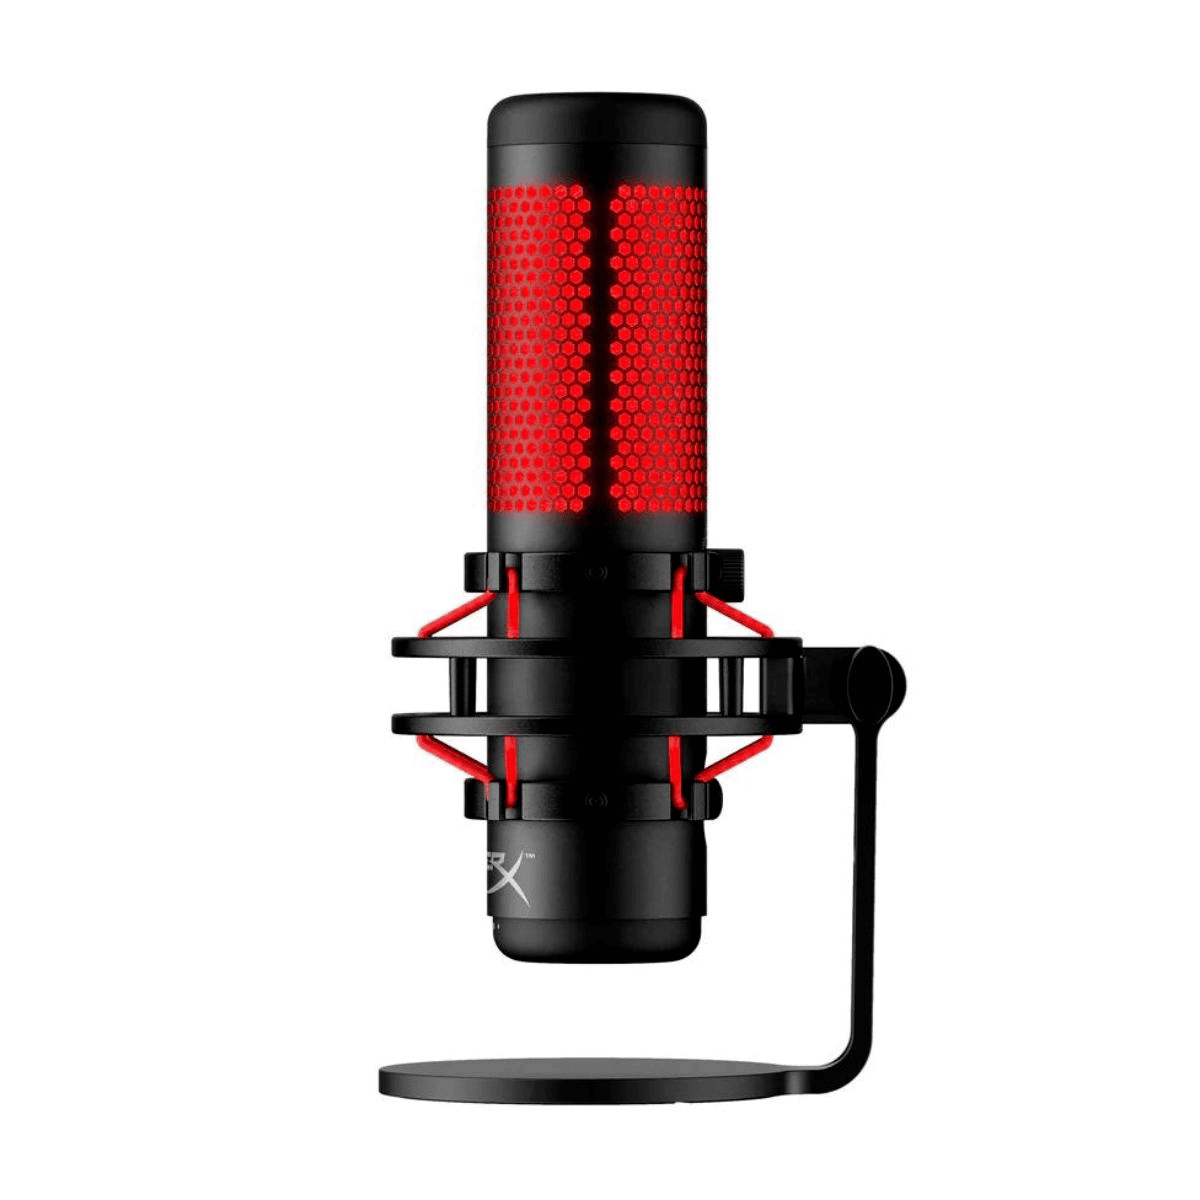 HyperX Mikrofon 4P5P6AA Schwarz